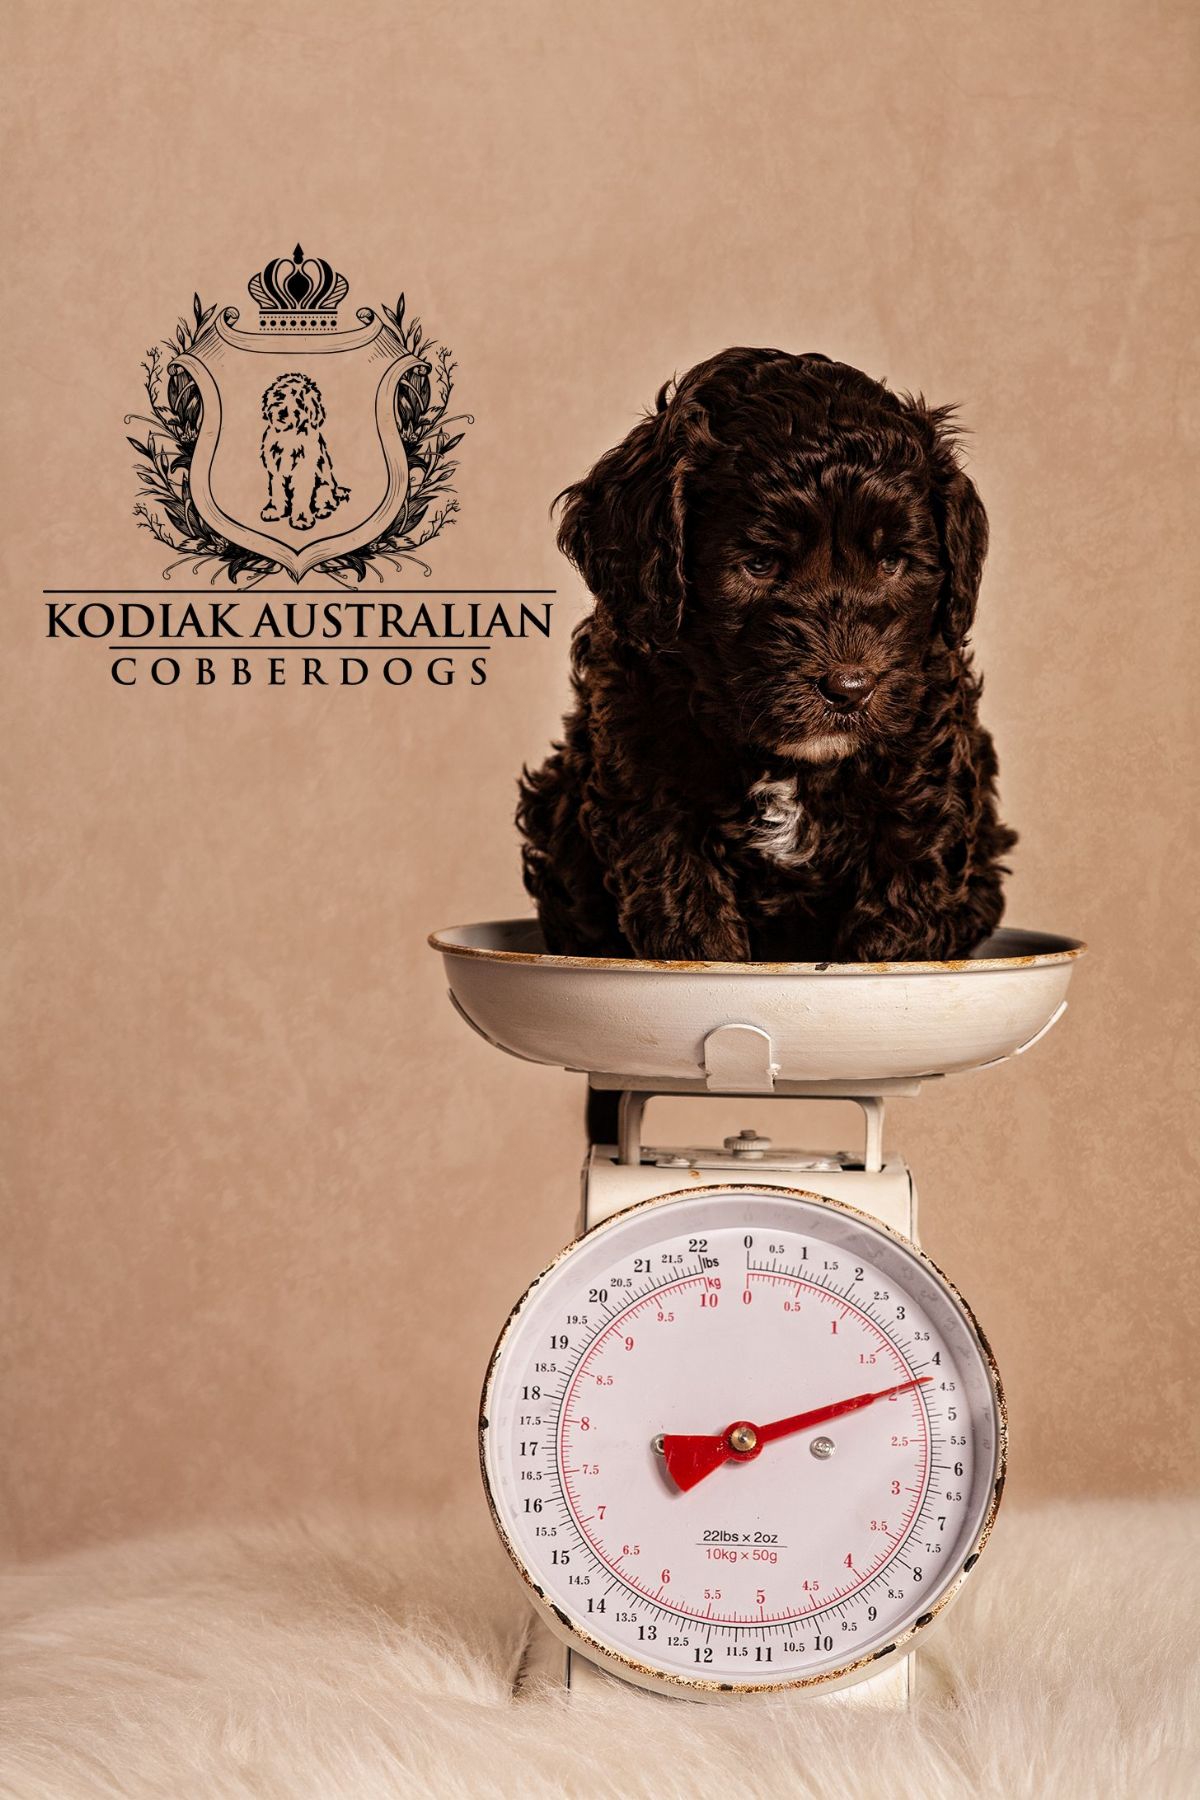 Kodiak Australian Cobberdogs for sale